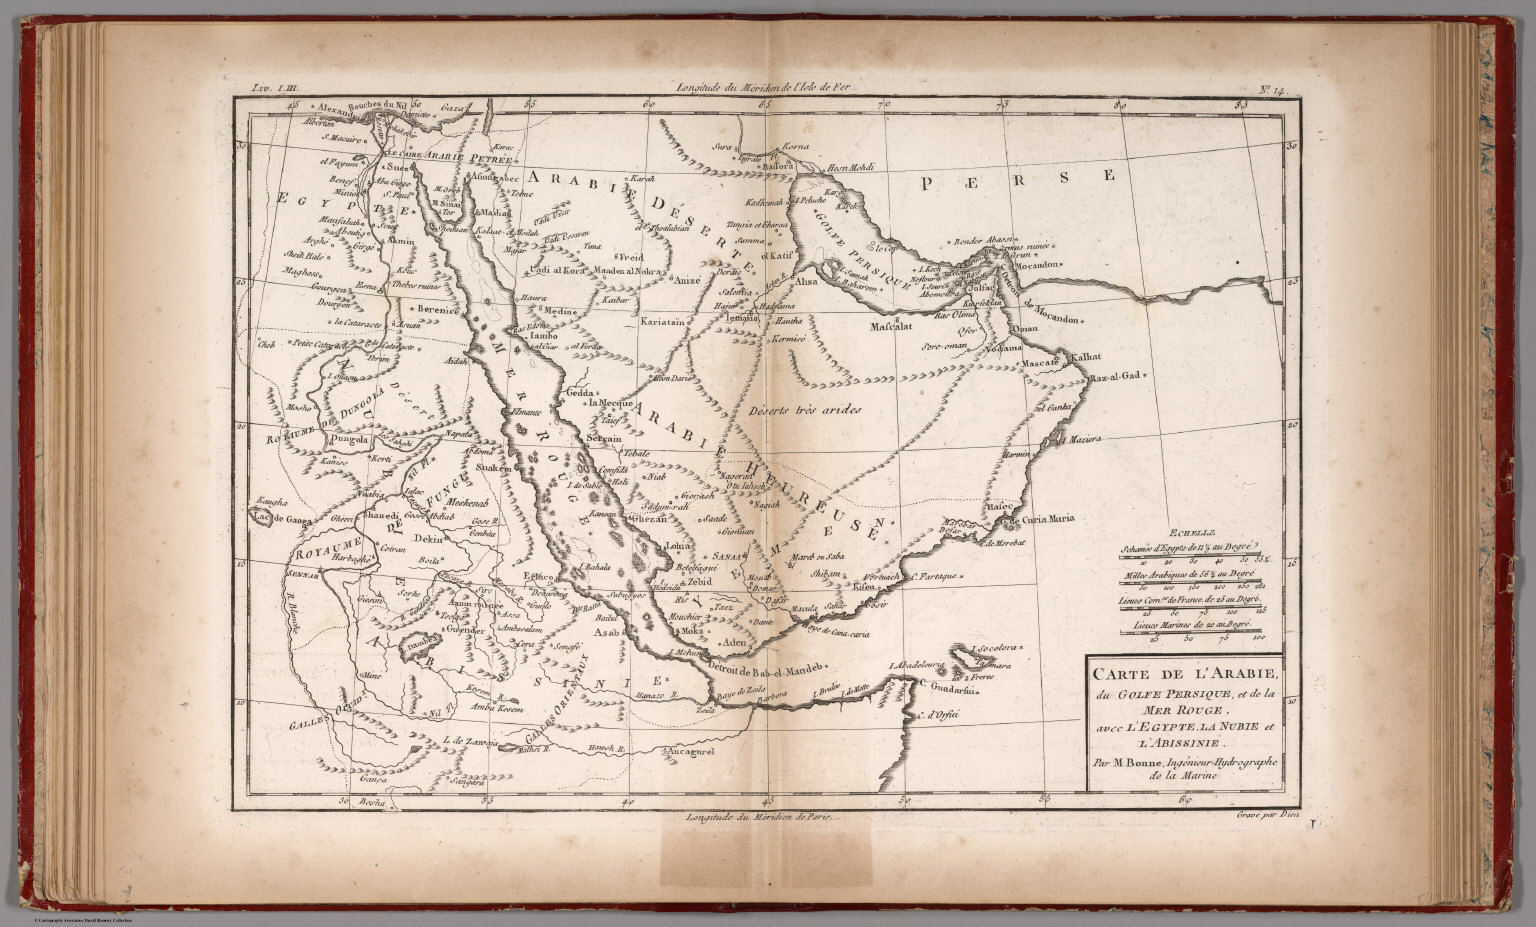 Carte De L Arabie Du Golfe Persique Et De La Mer Rouge David Rumsey Historical Map Collection